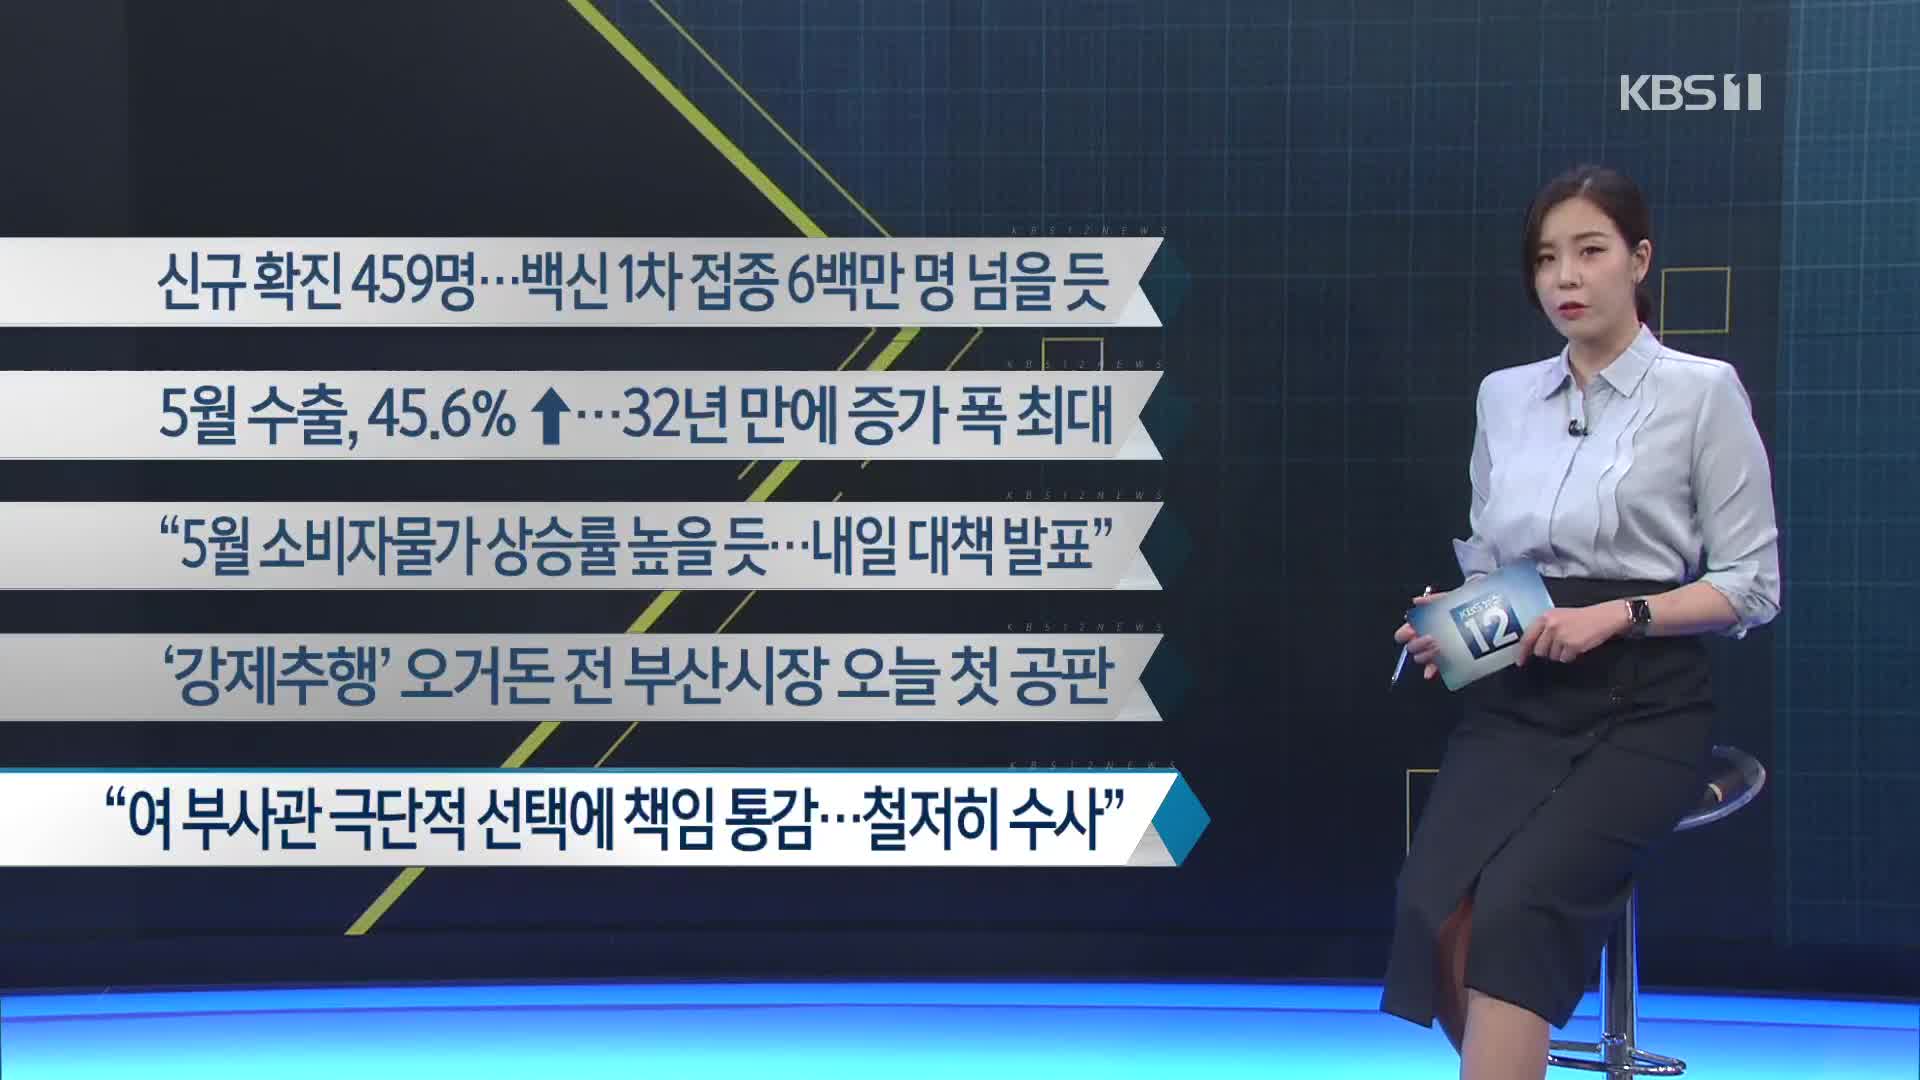 [이 시각 주요뉴스] 신규 확진 459명…백신 1차 접종 6백만 명 넘을 듯 외